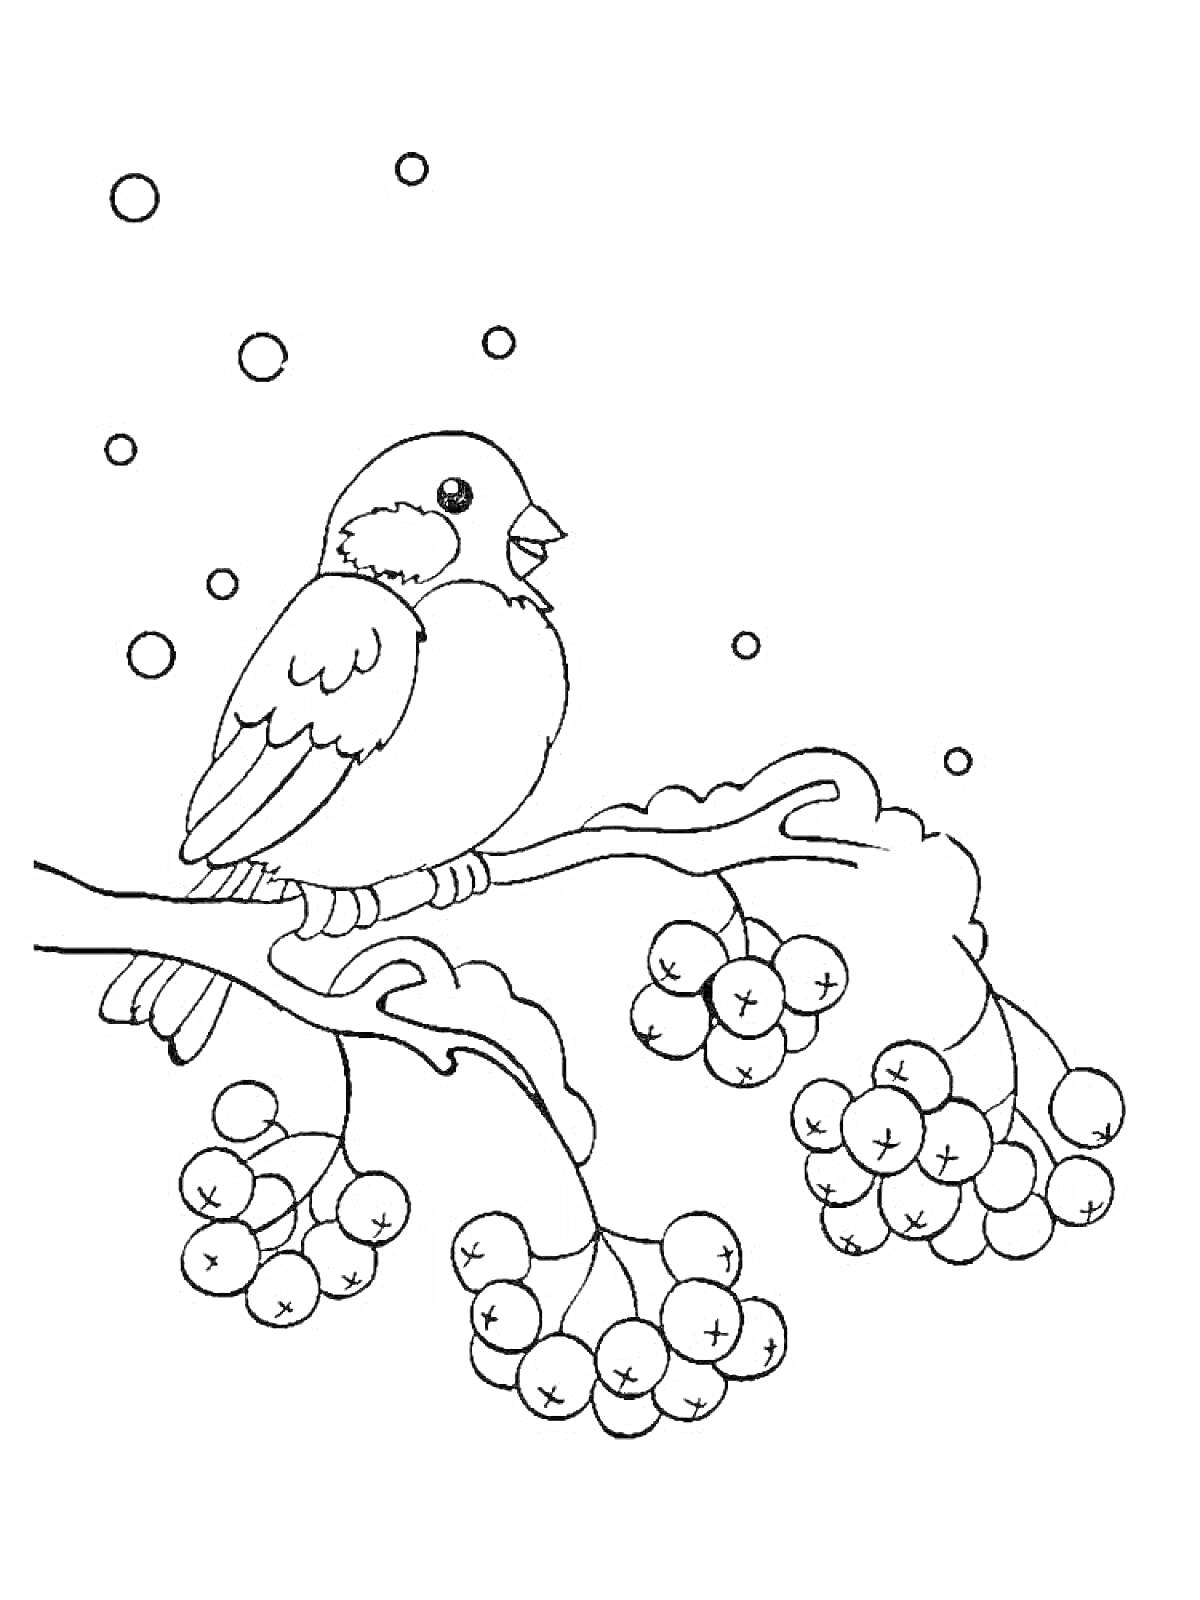 Раскраска Снегирь на веточке рябины с падающими снежинками